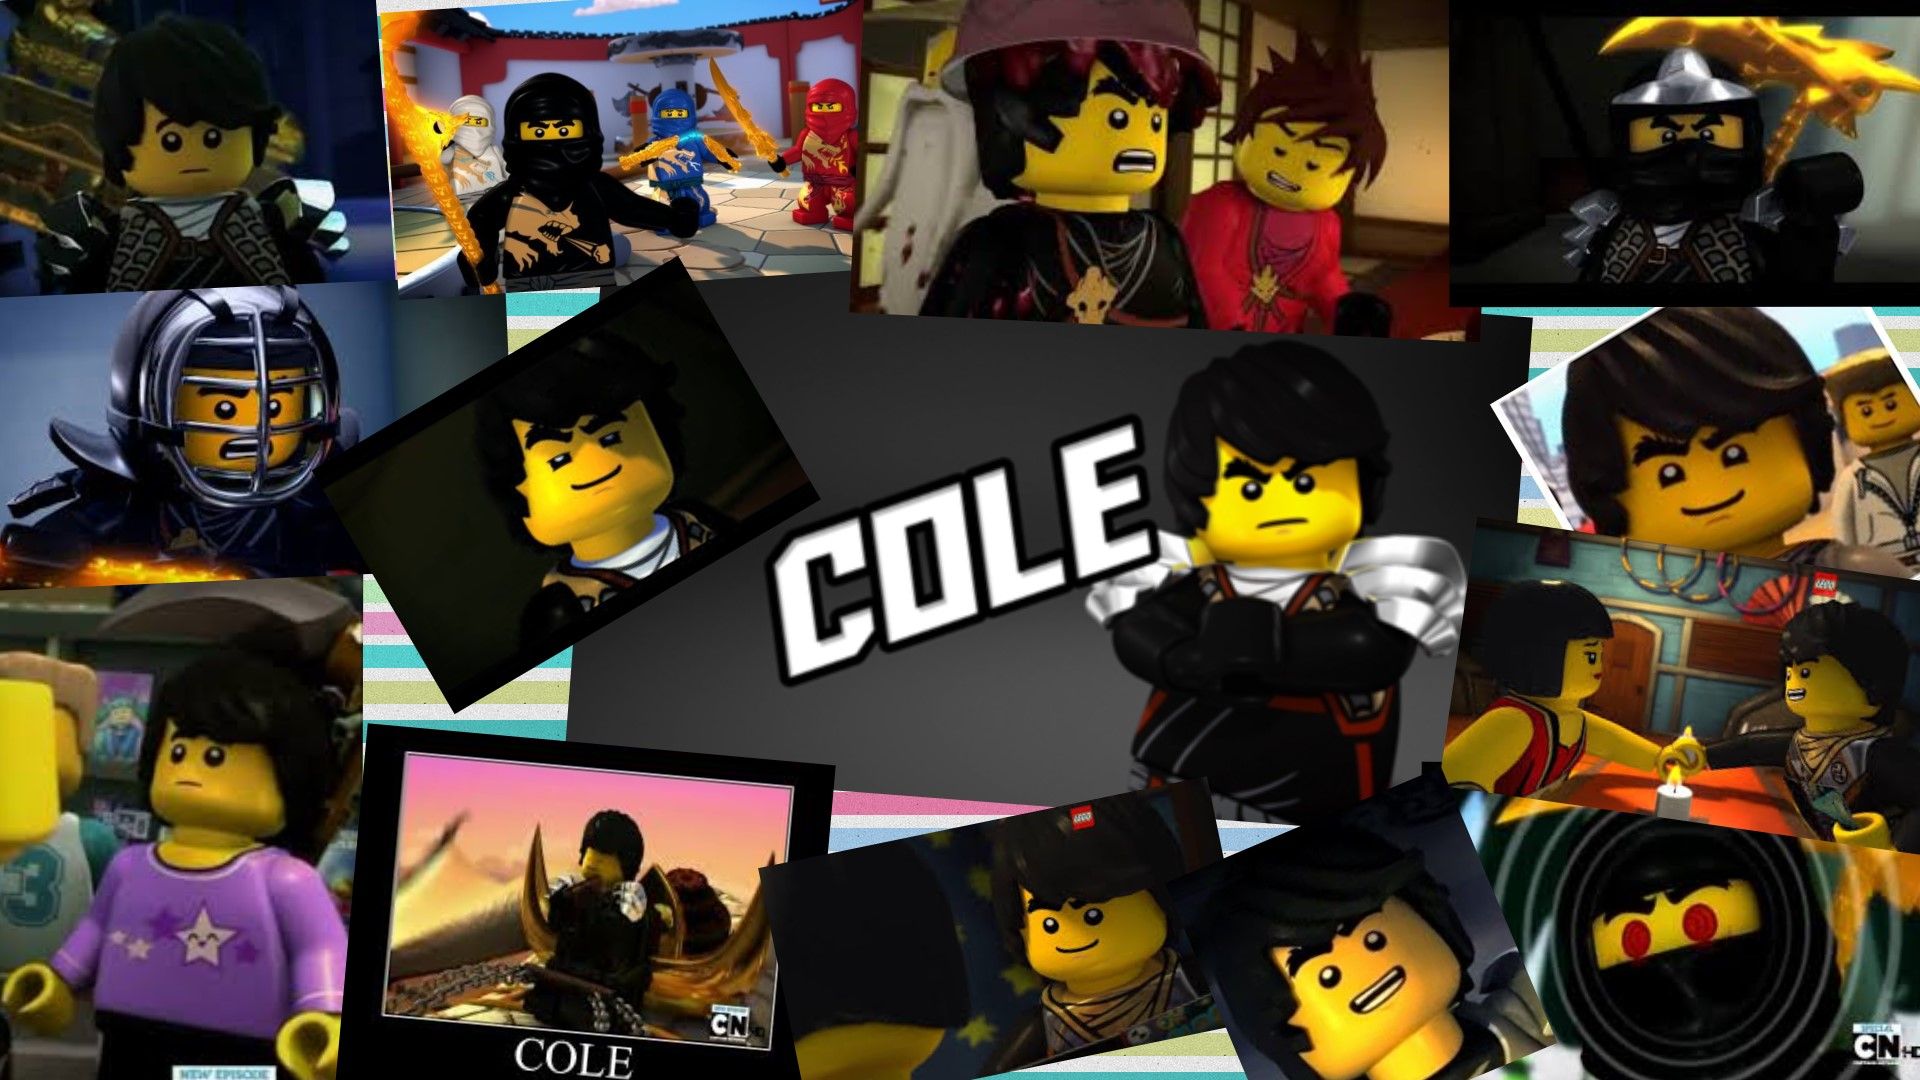 Cole Collage I Made Ninjago Lego